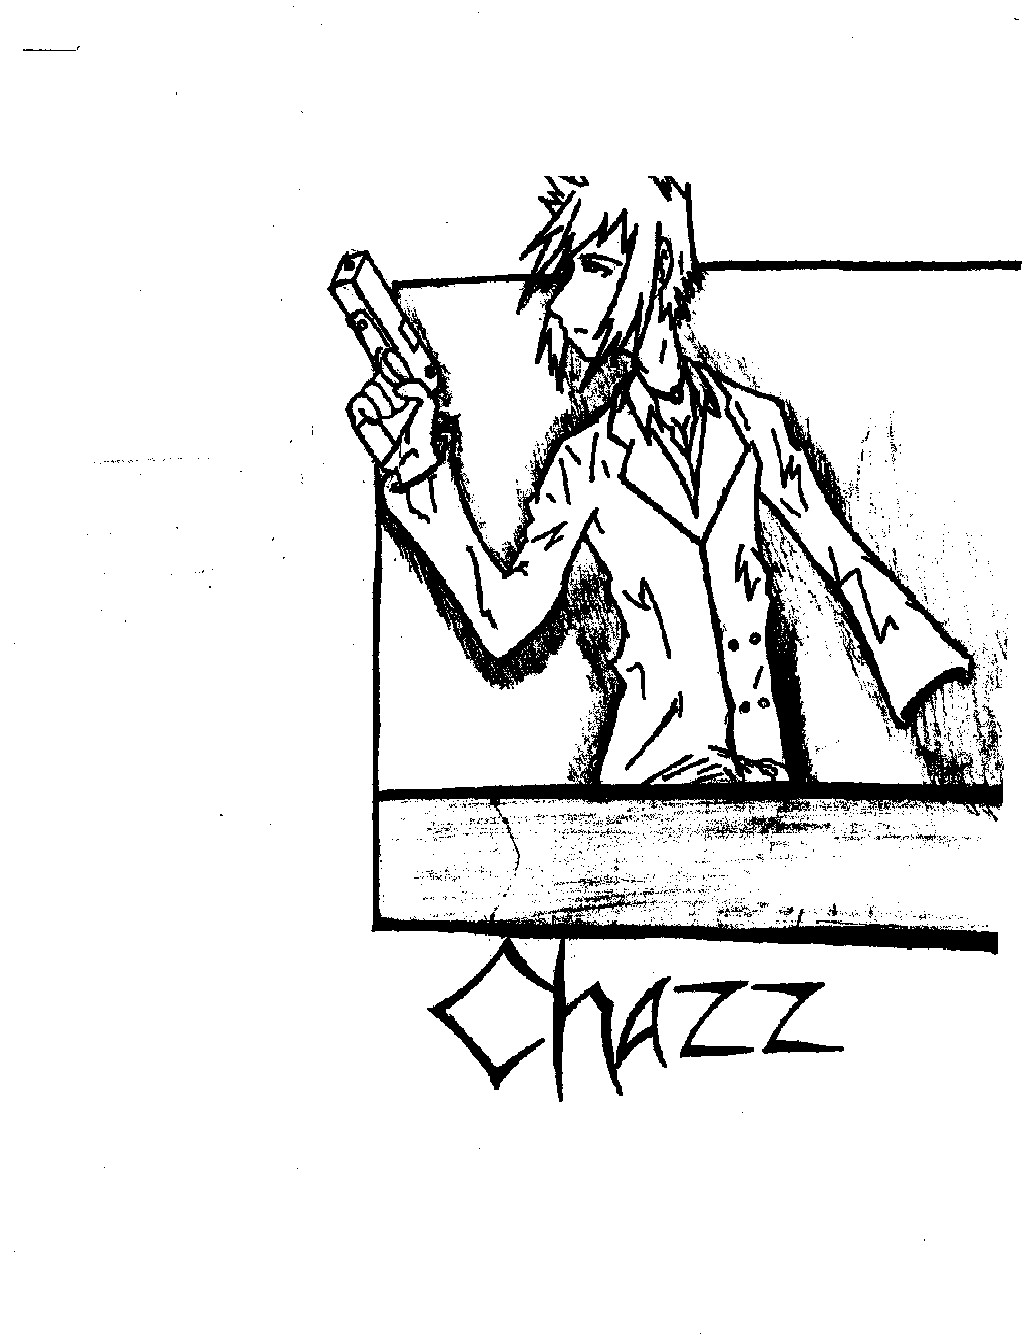 Chazz by manga_man